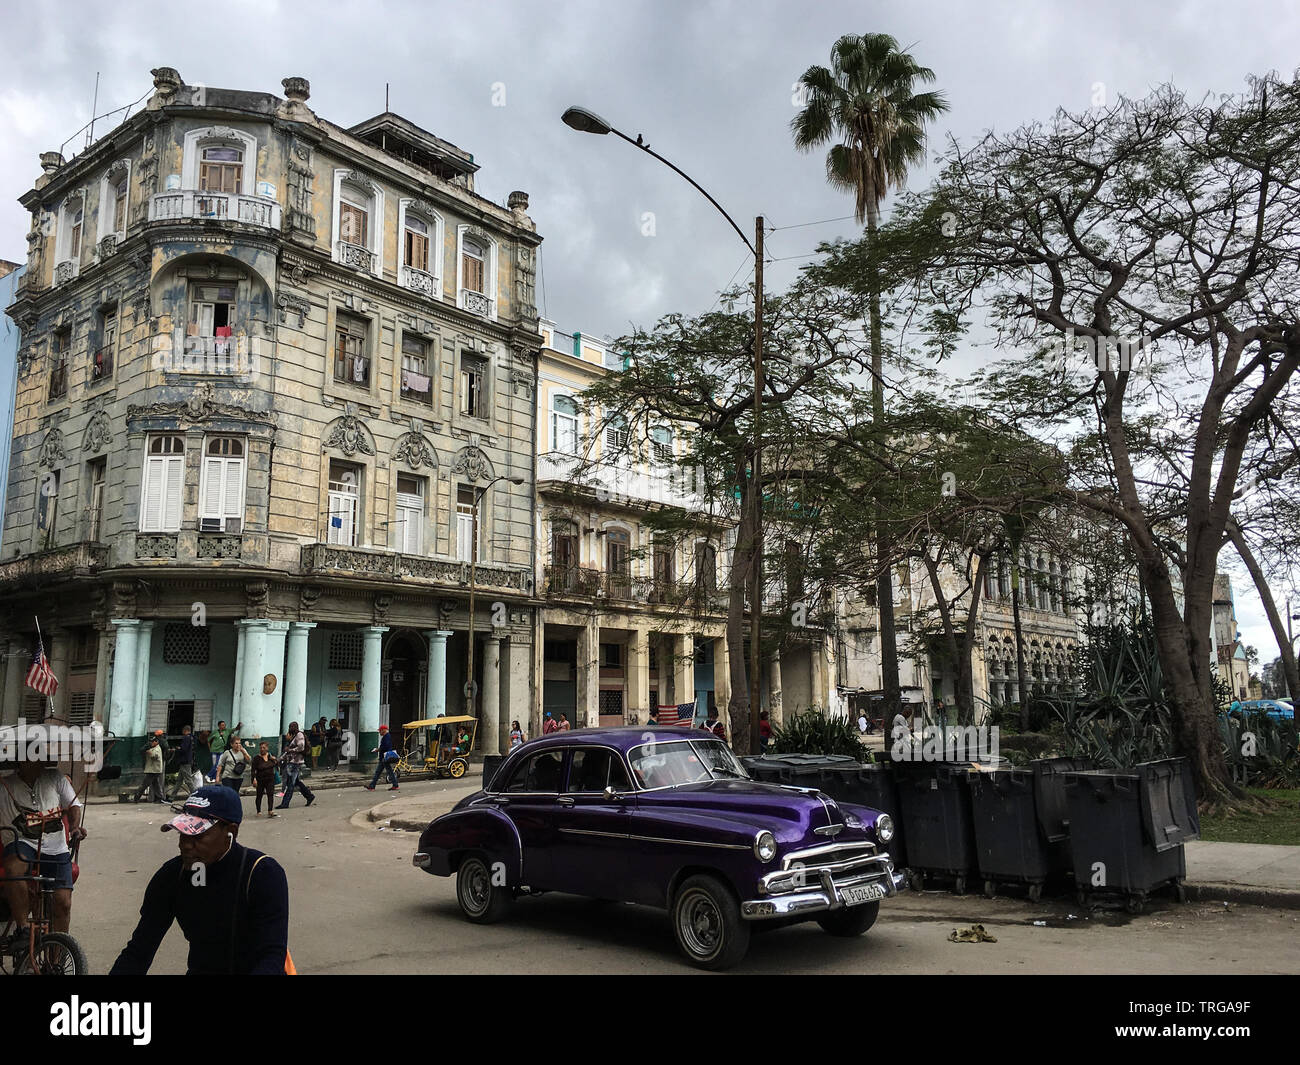 La Havane, Cuba - 31 janvier 2018 : classique, vieille voiture américaine de couleur pourpre dans les rues de la ville de La Havane Banque D'Images